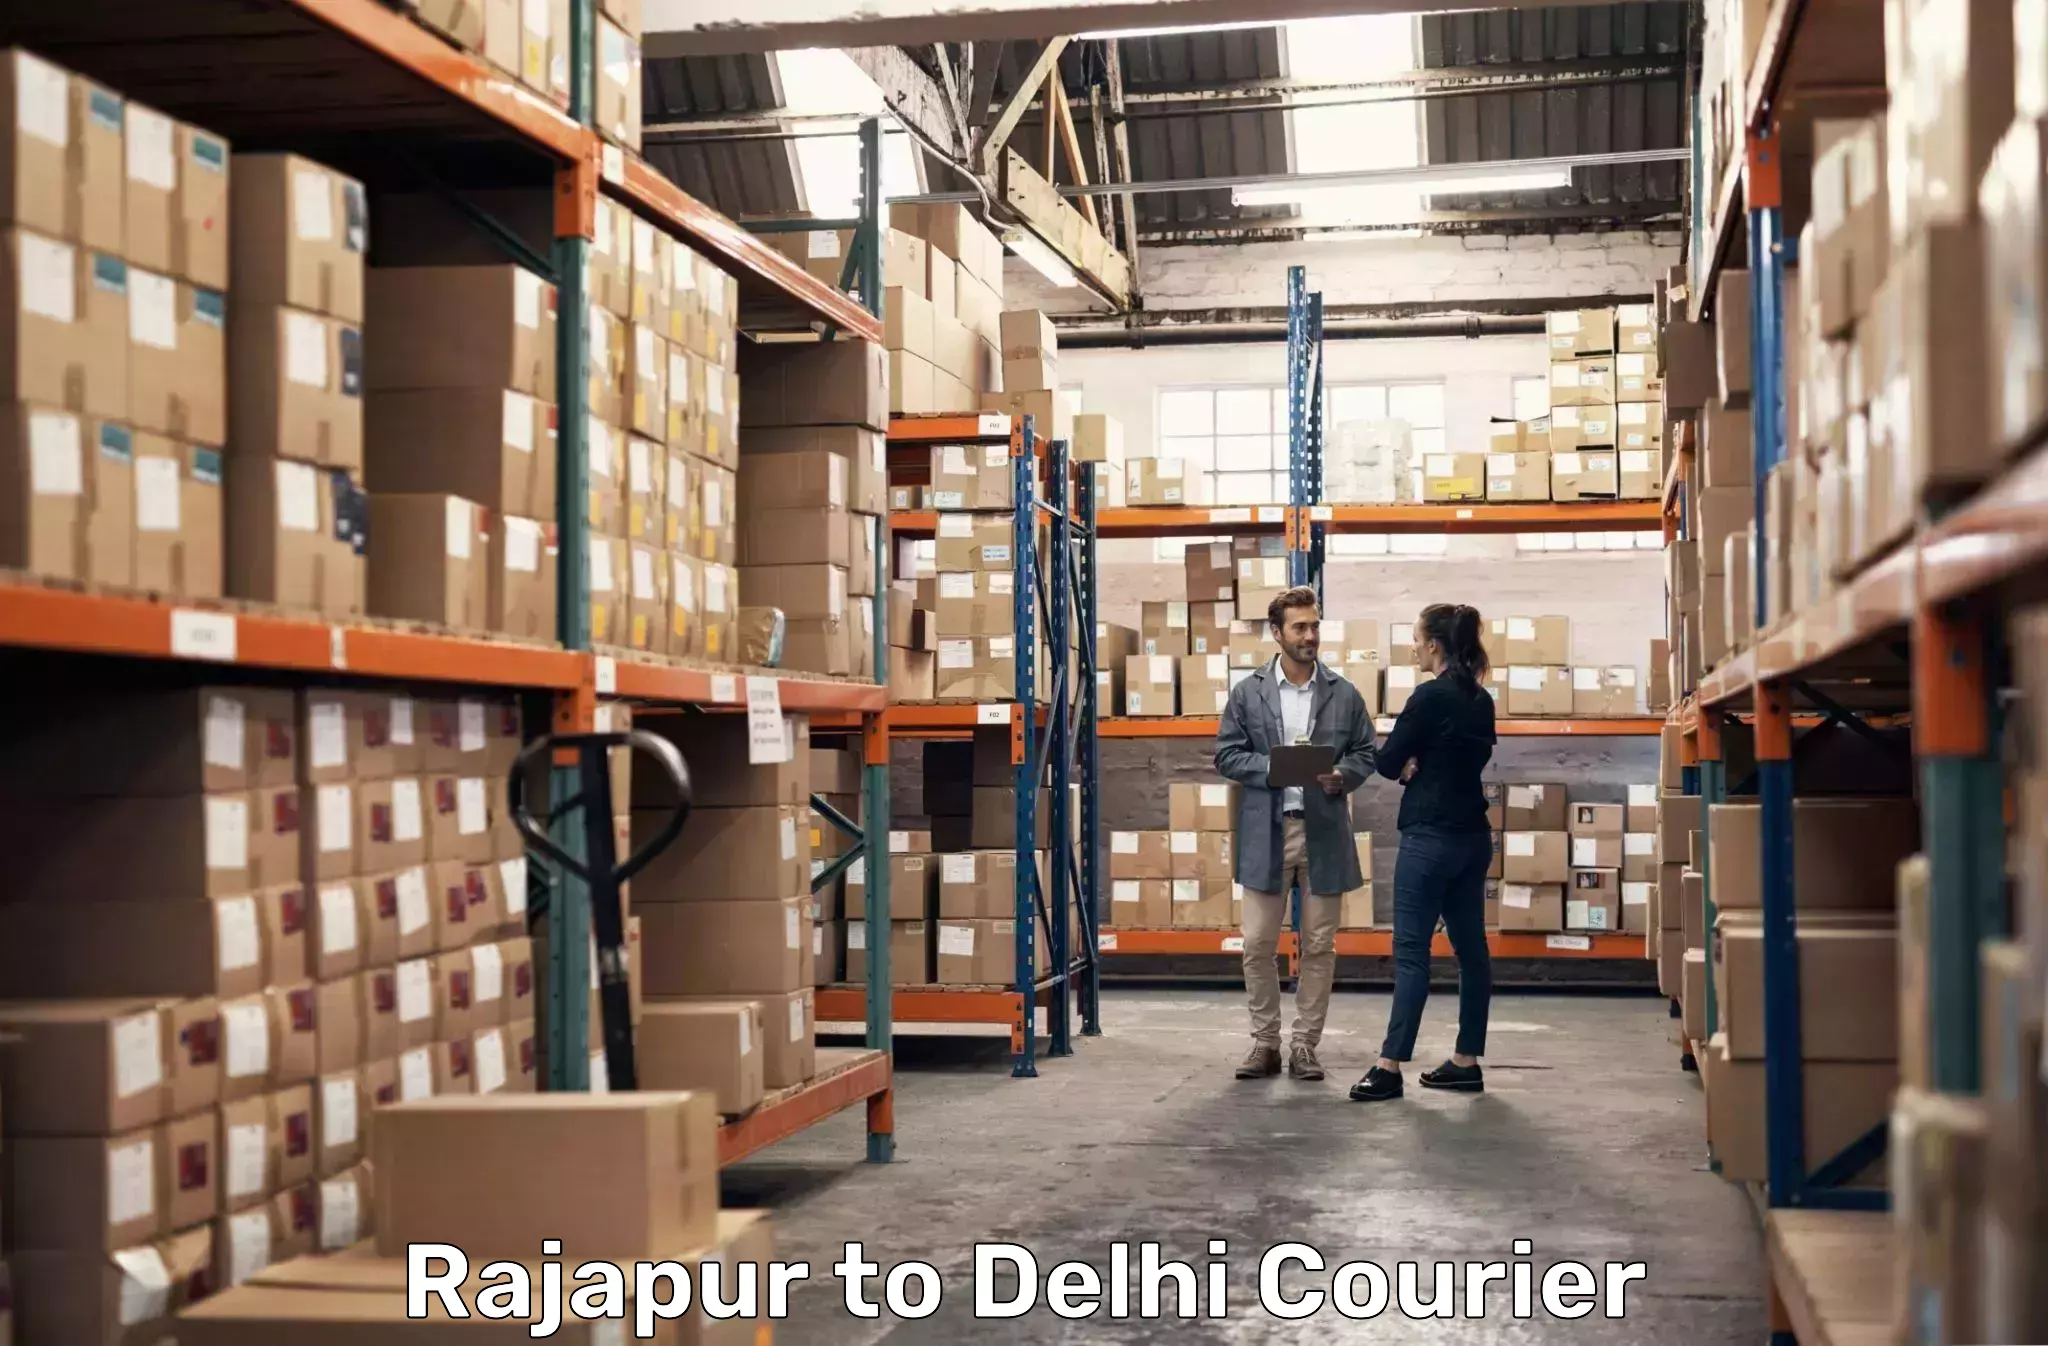 Comprehensive shipping network Rajapur to Delhi Technological University DTU